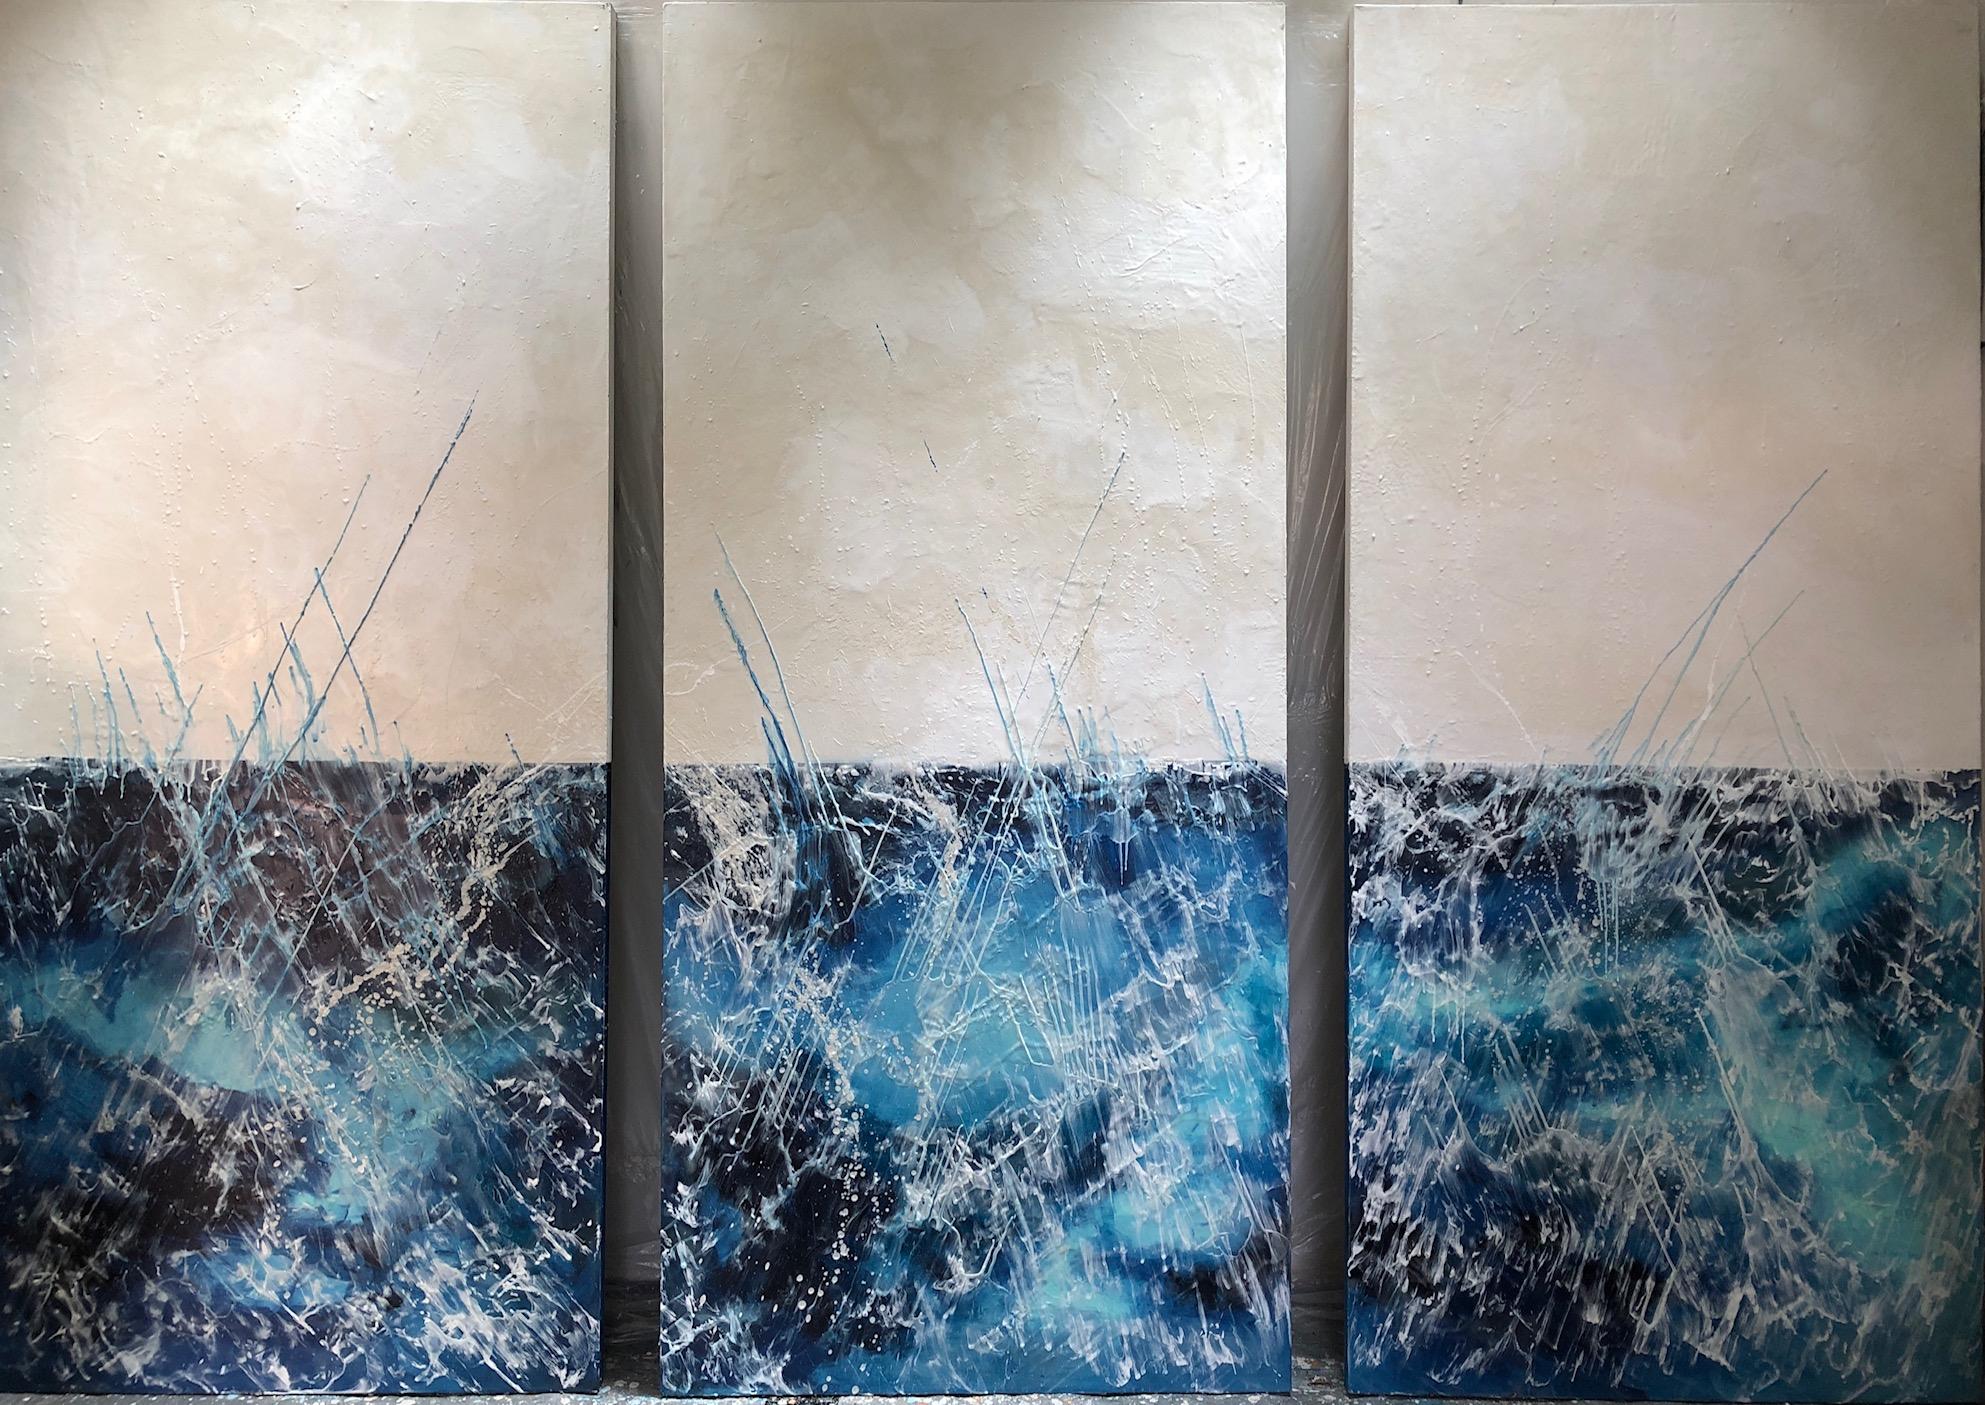 Andrea Bonfils - Plunge Triptych, Painting 2019